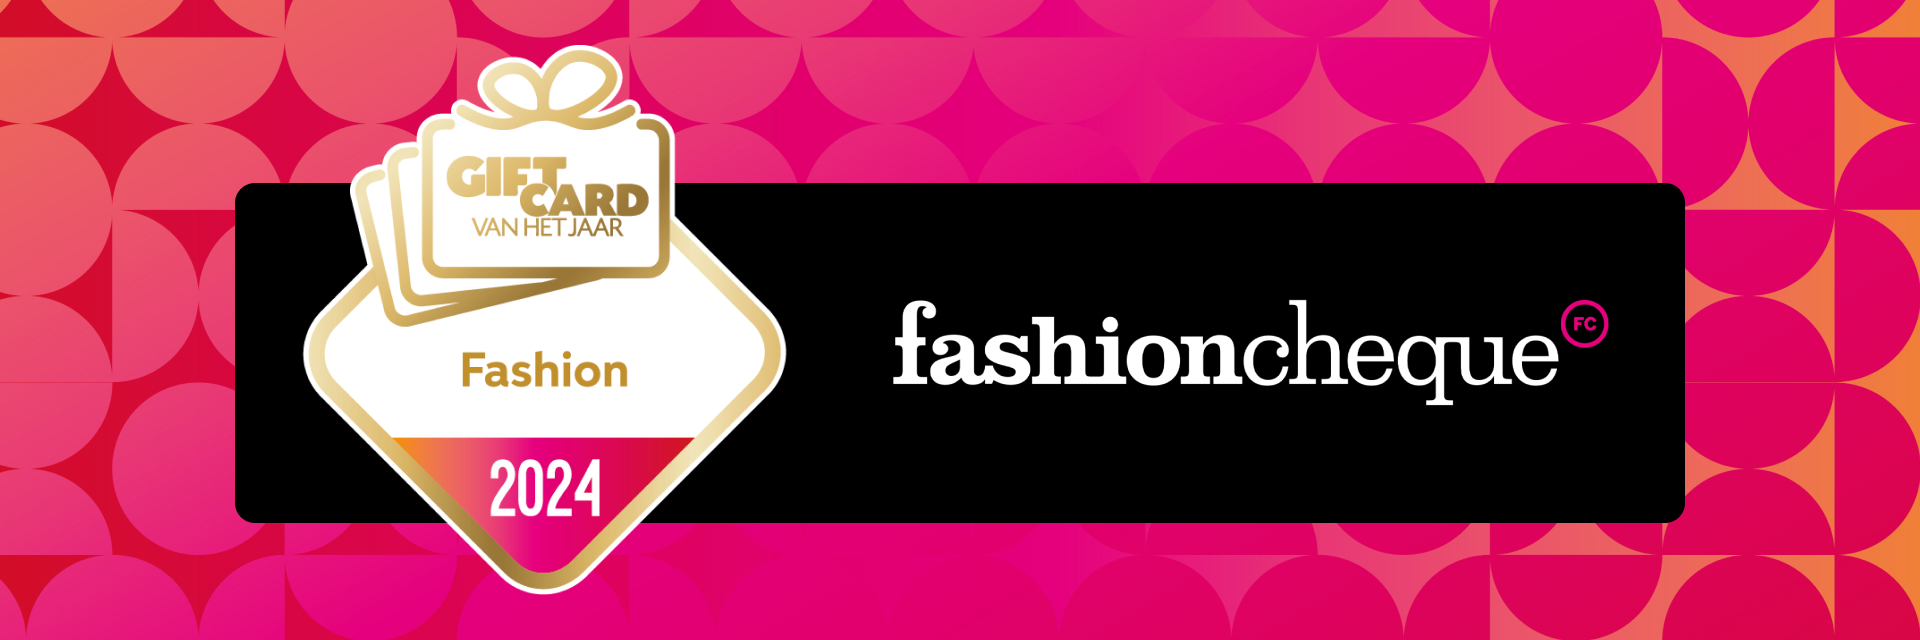 fashioncheque winnaar 'Giftcard van het Jaar'!